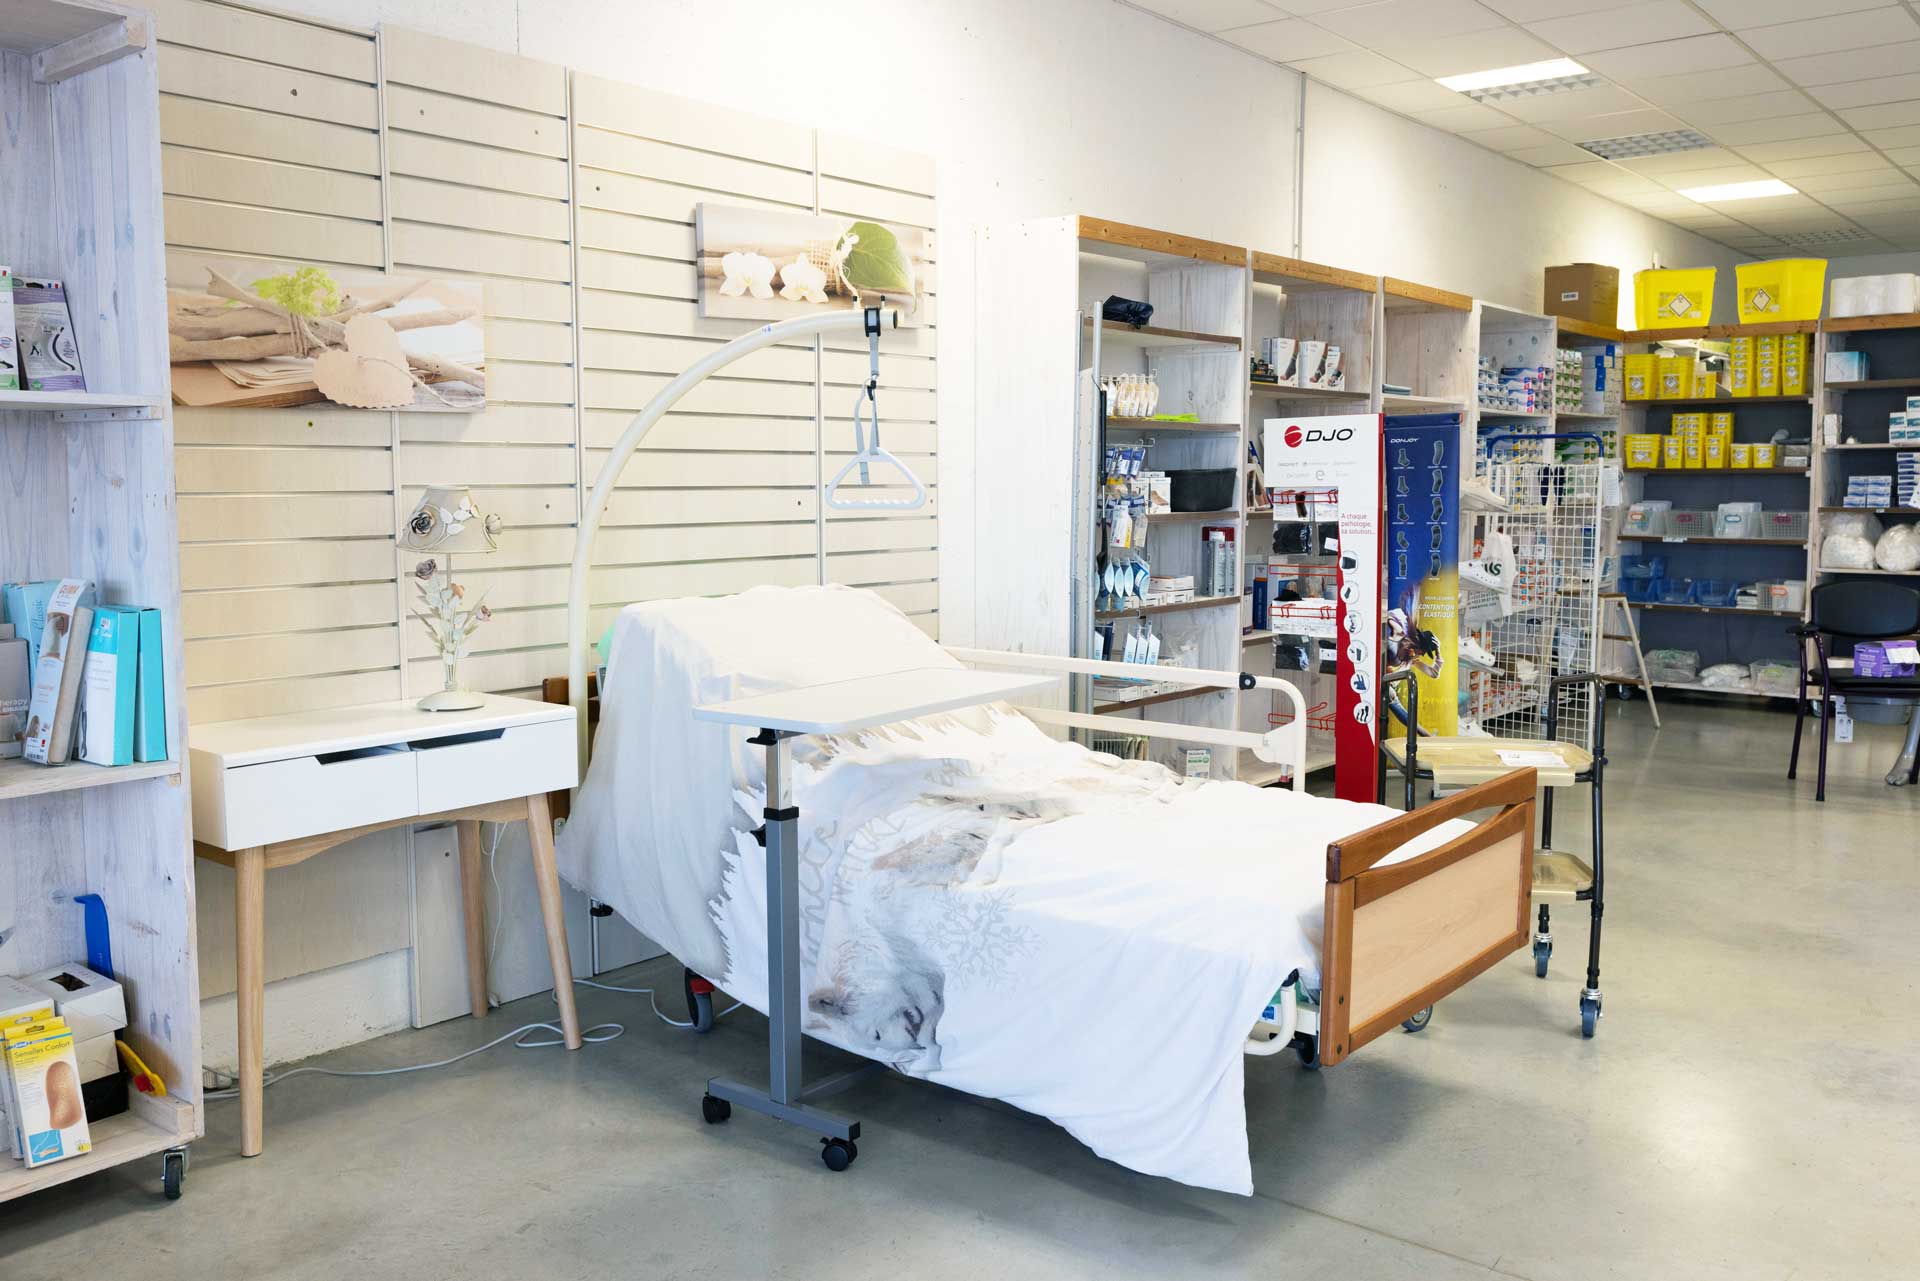 Un modèle de lit médicalisé proposé dans le magasin Sérédom